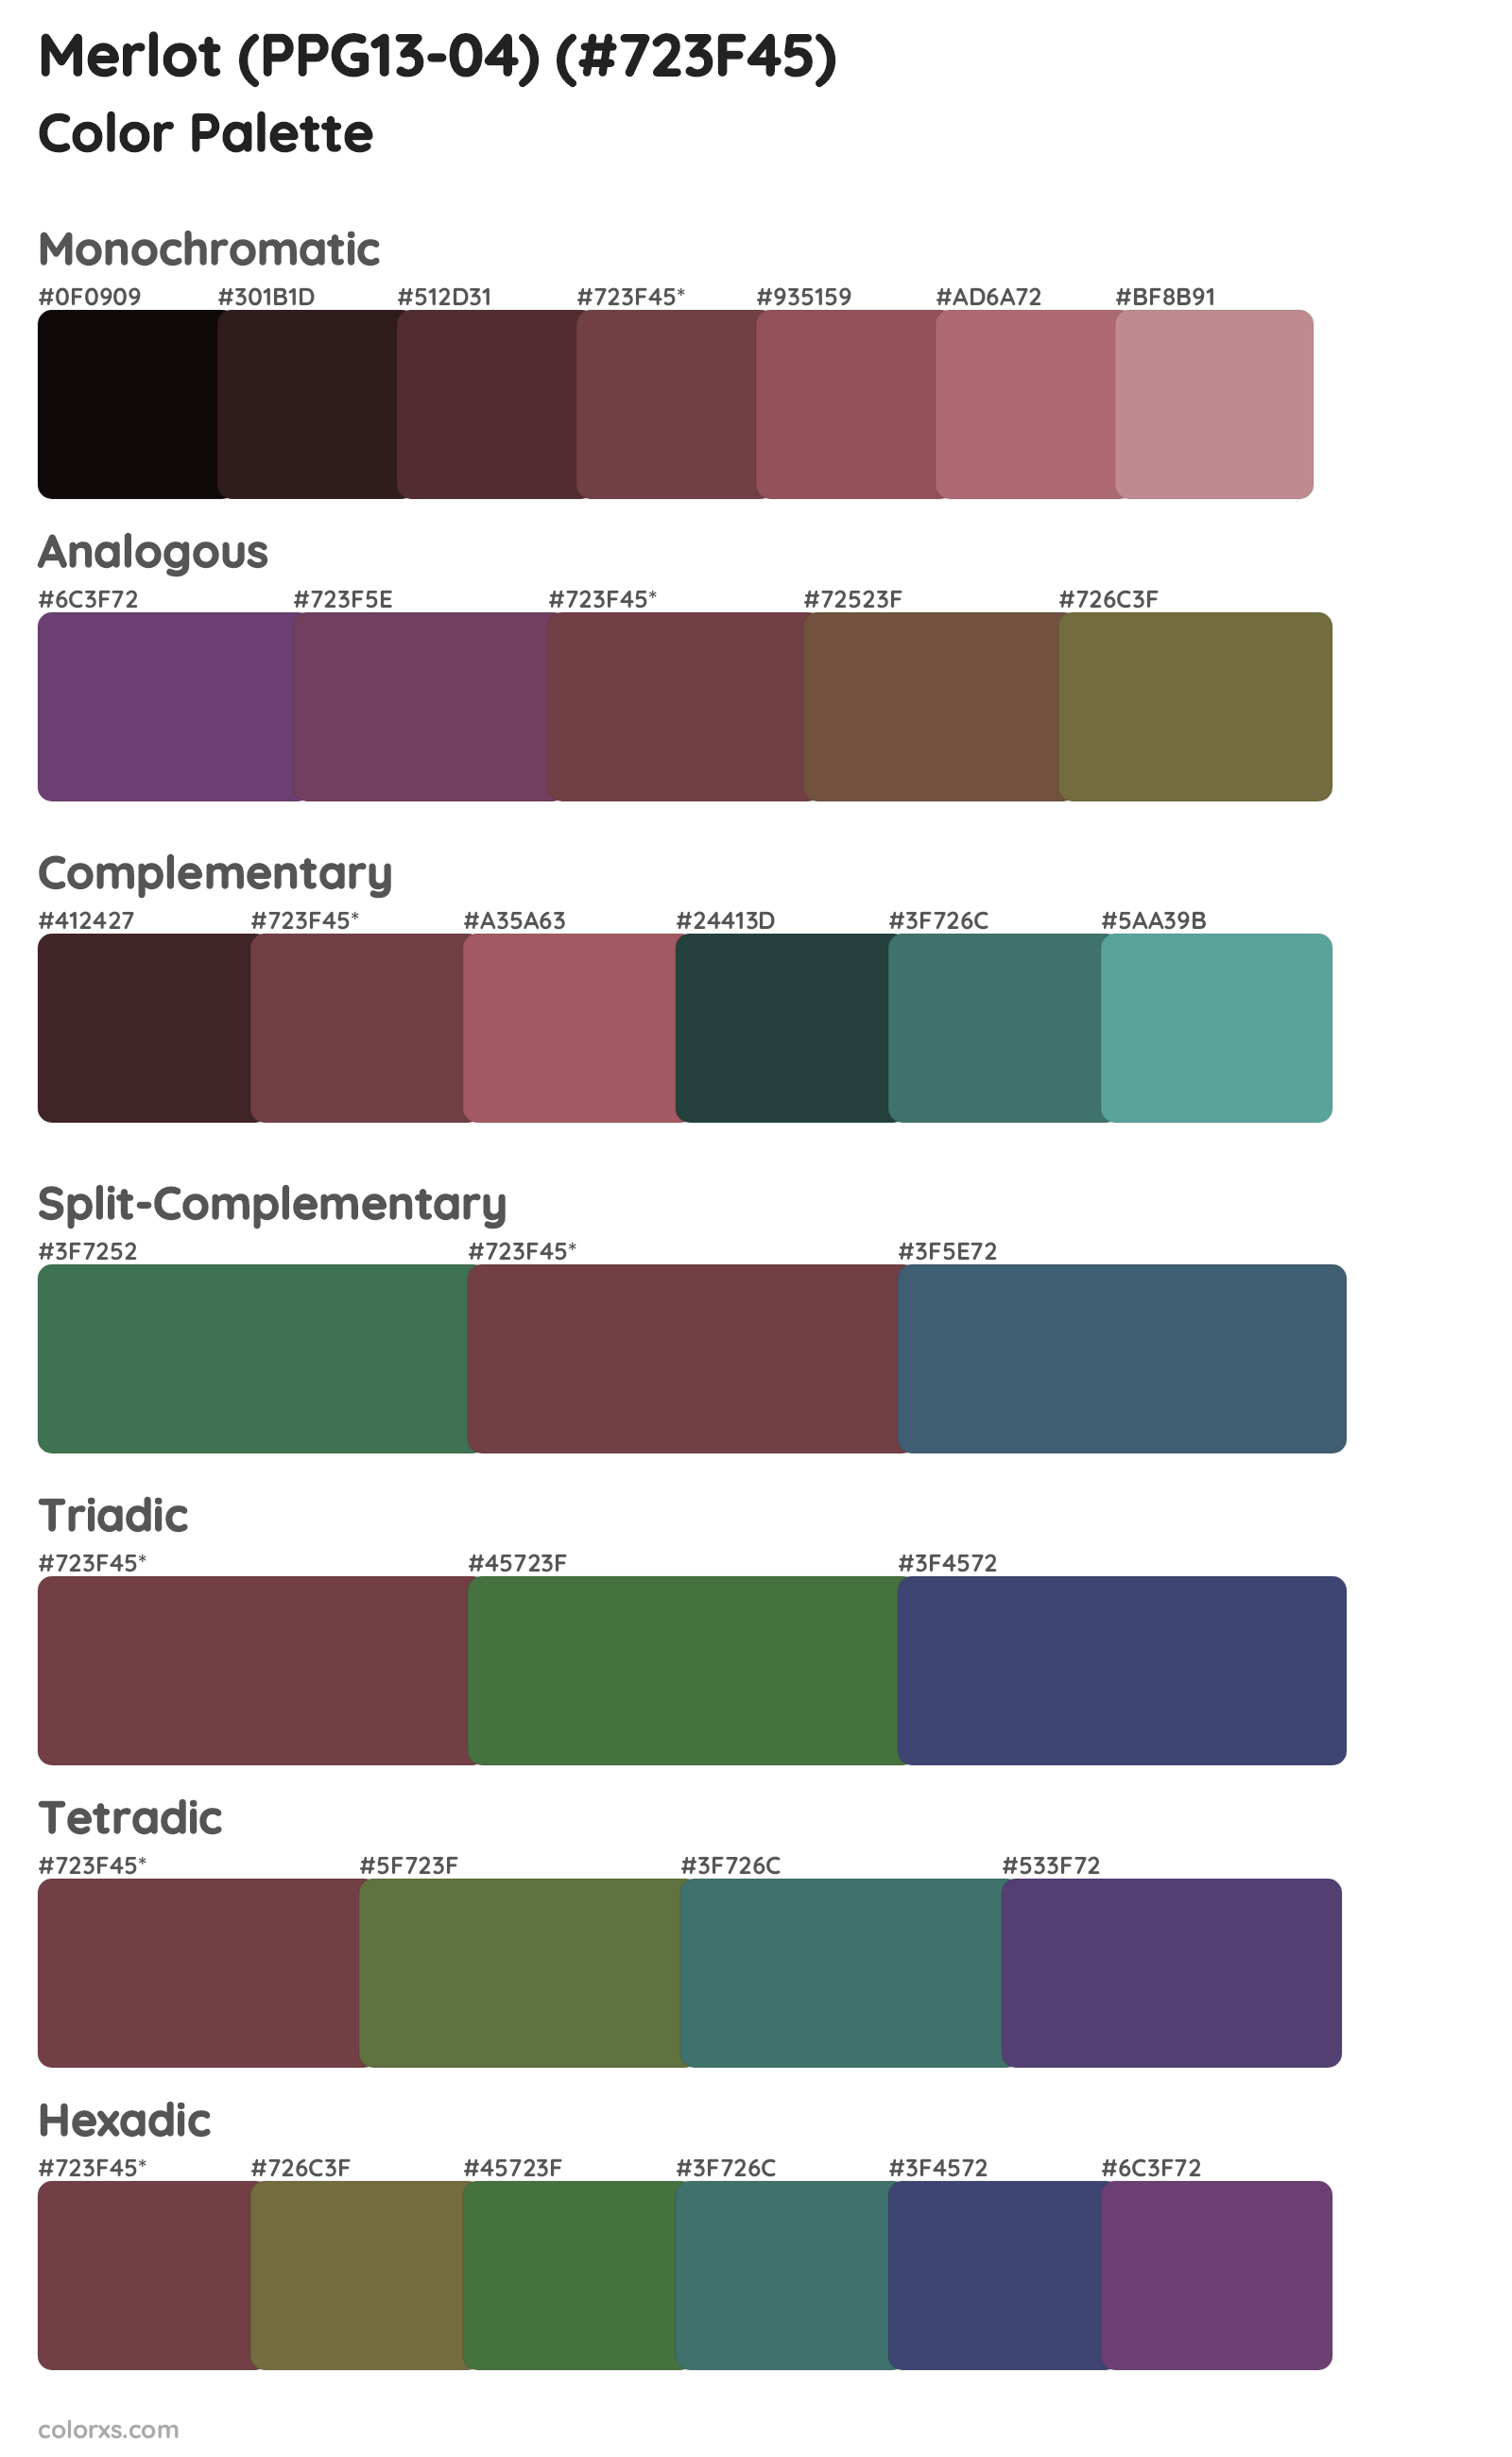 Merlot (PPG13-04) Color Scheme Palettes